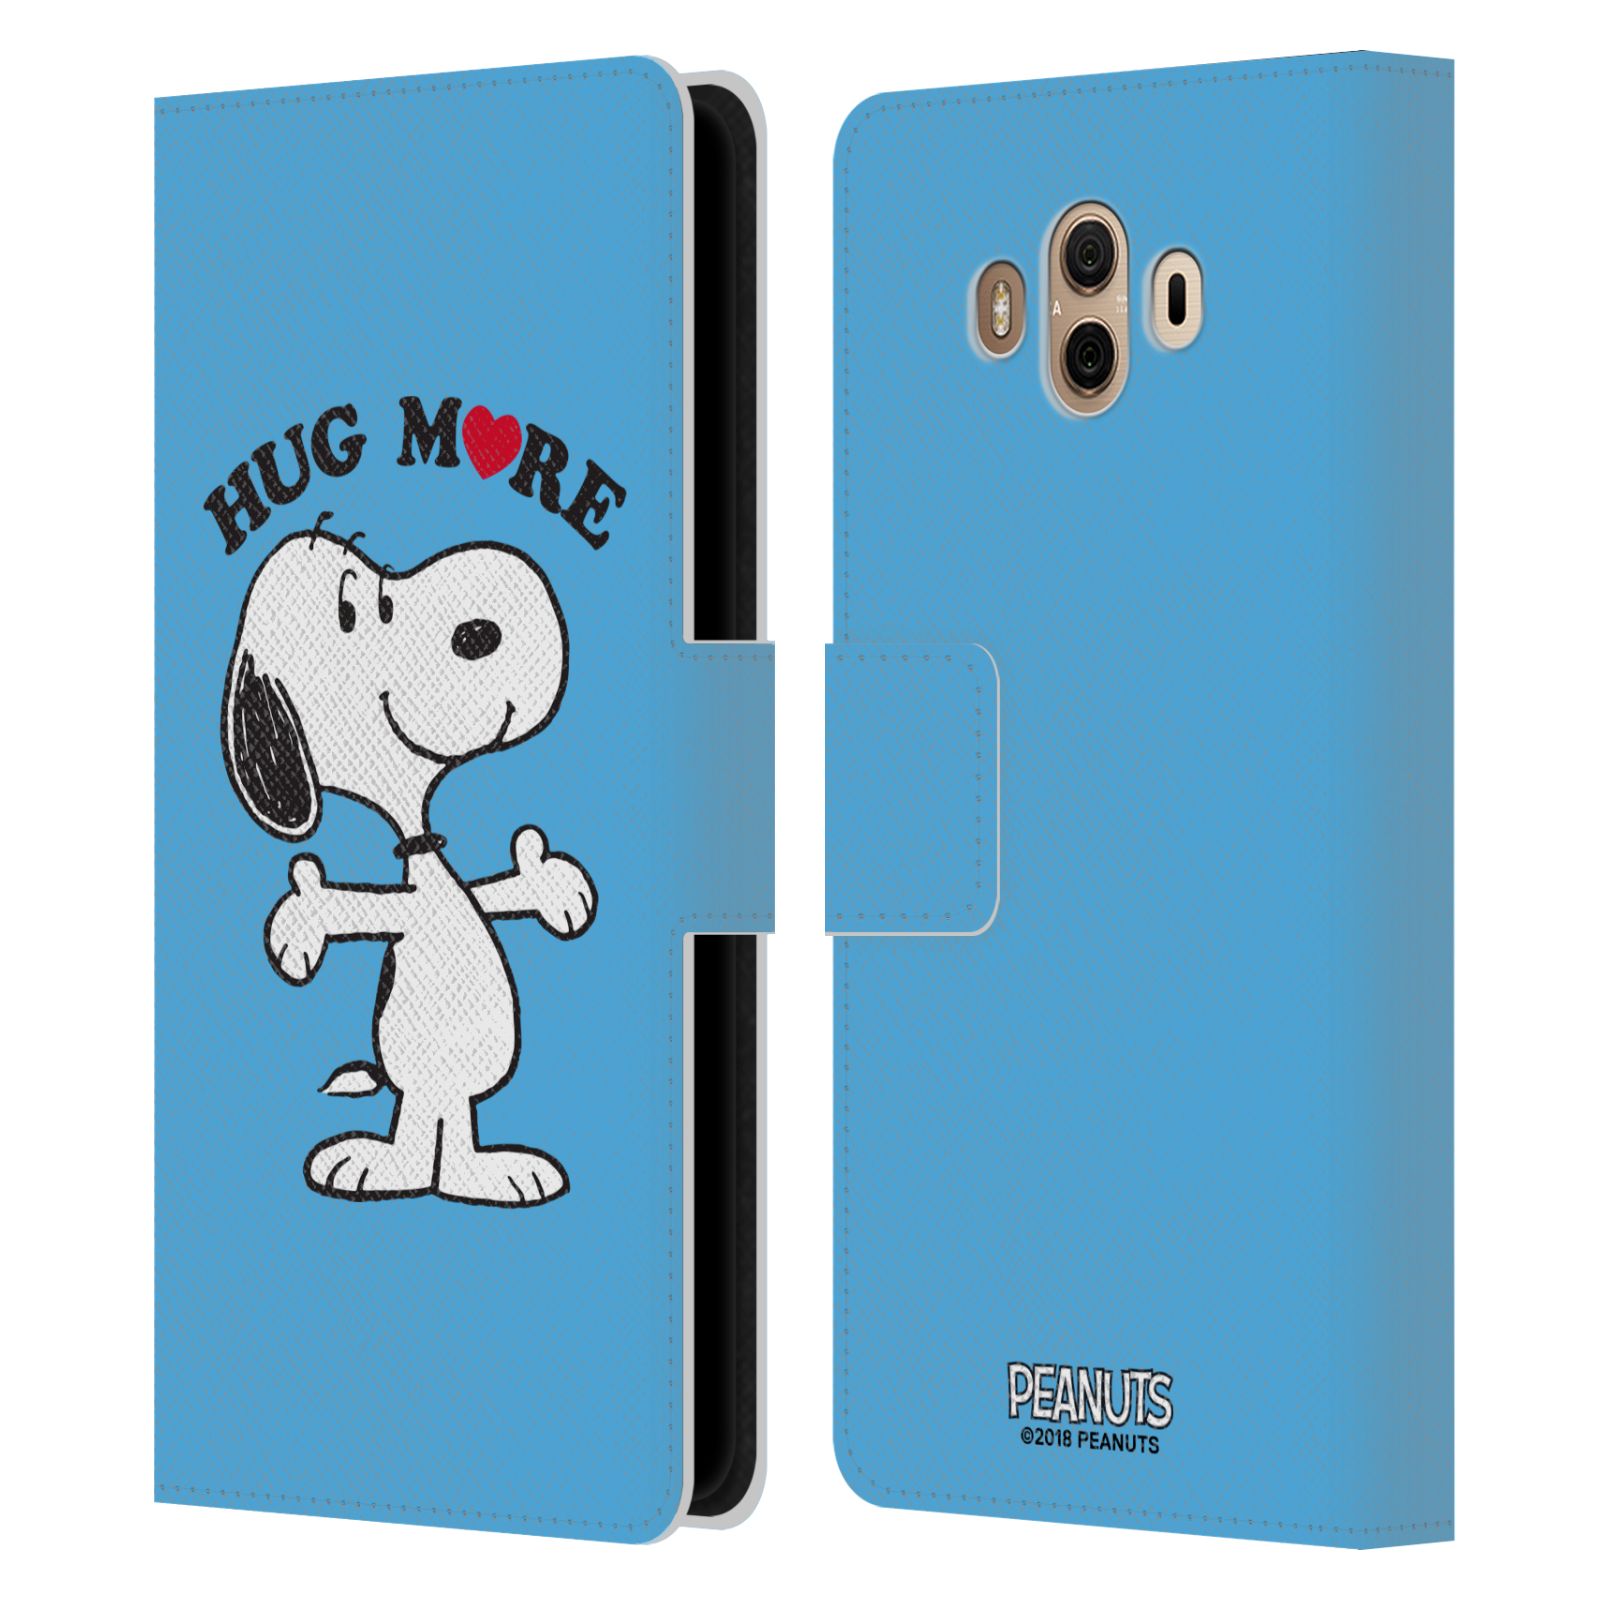 Pouzdro na mobil Huawei Mate 10 - Head Case - Peanuts - pejsek snoopy světle modré objetí